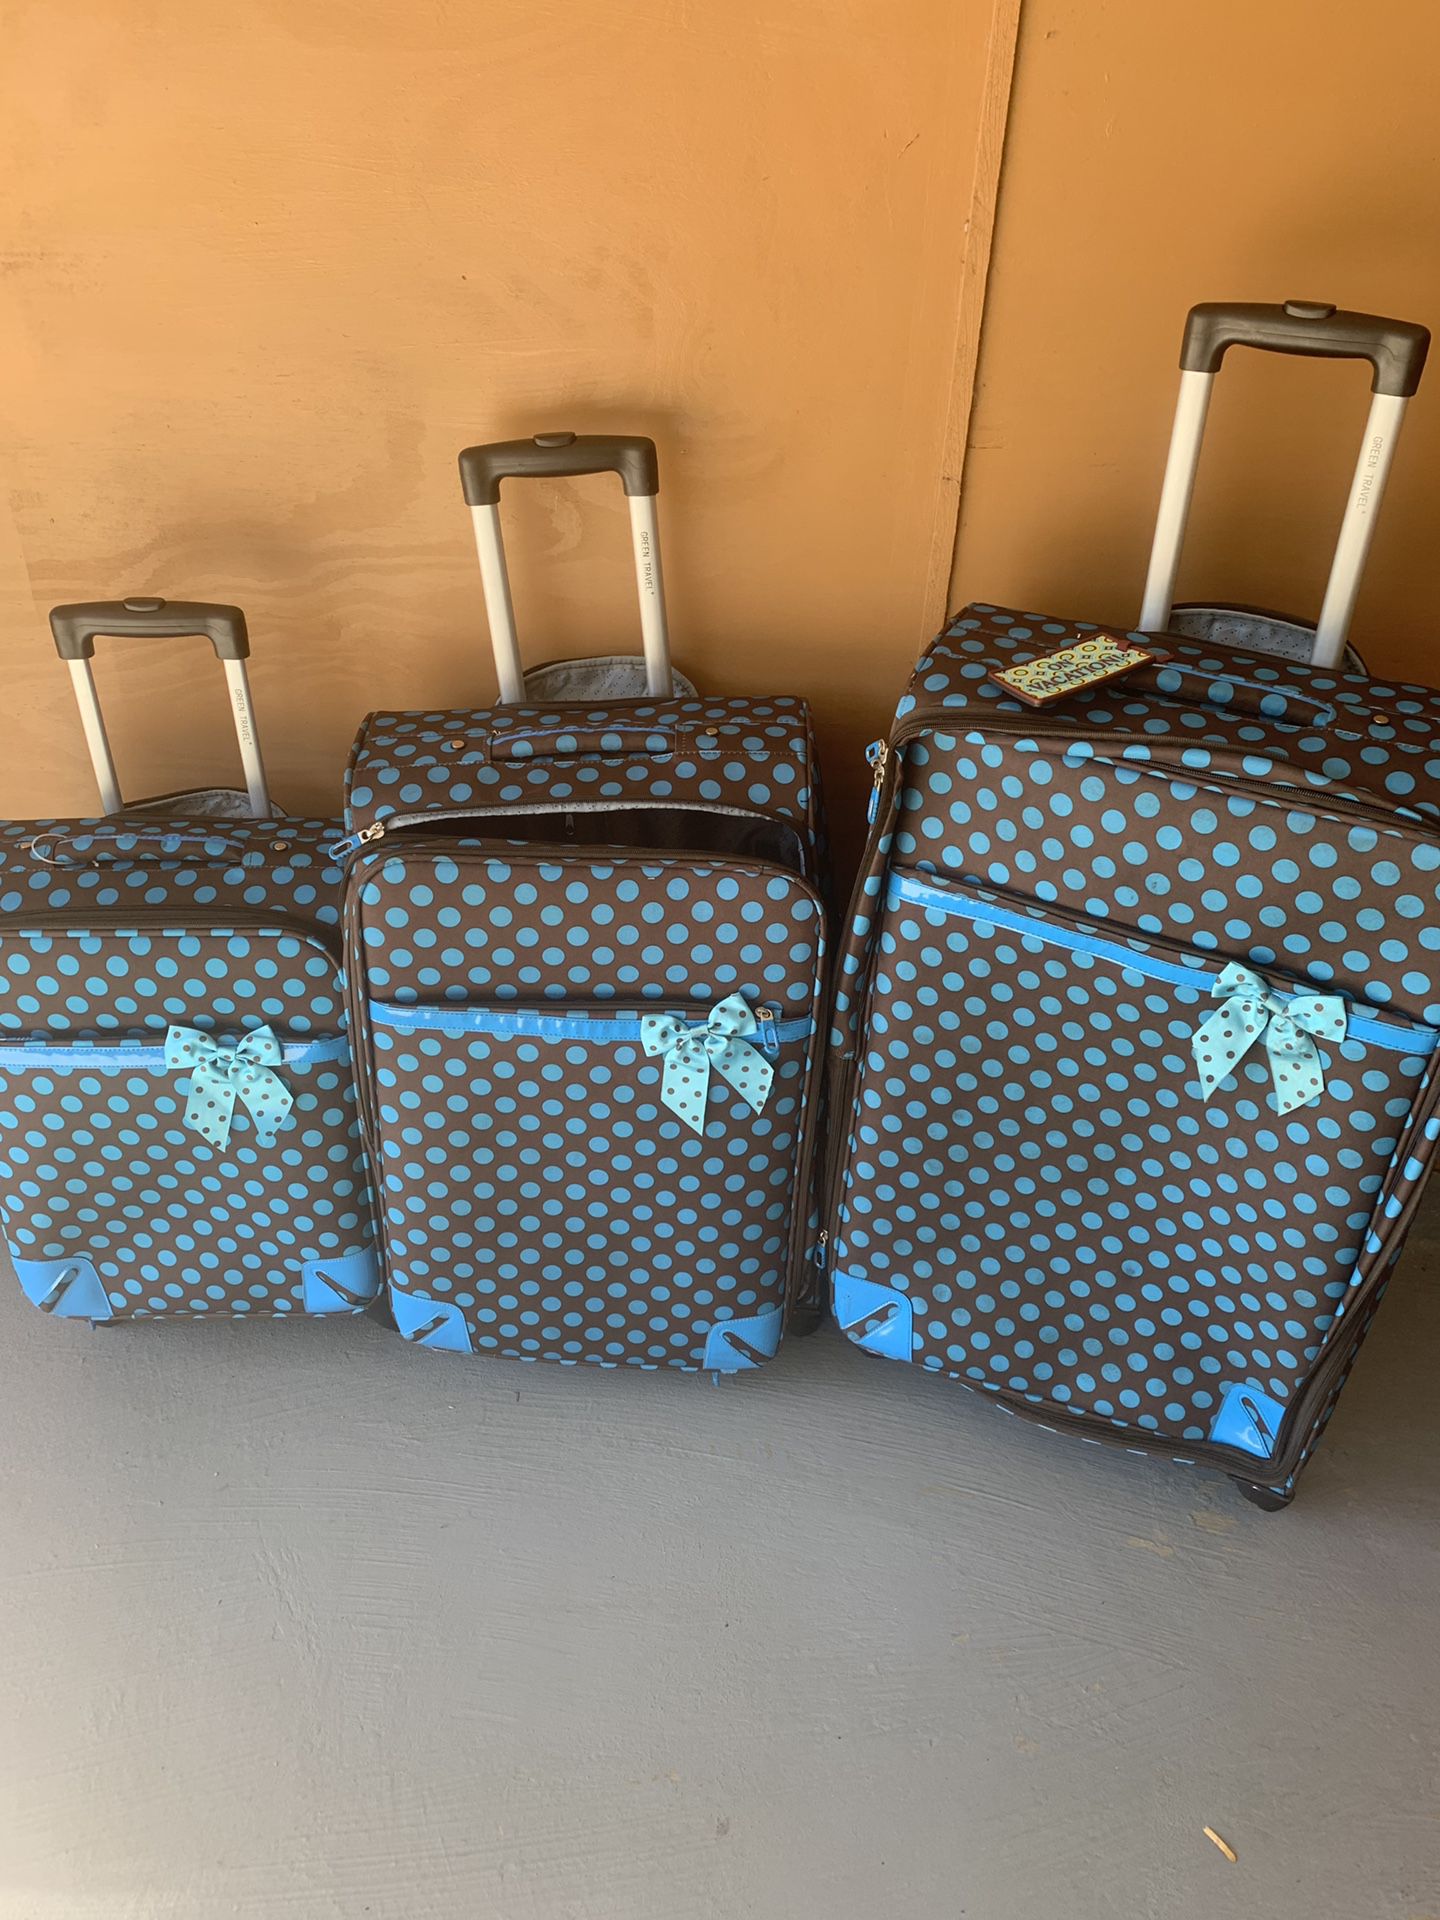 3 pc luggage